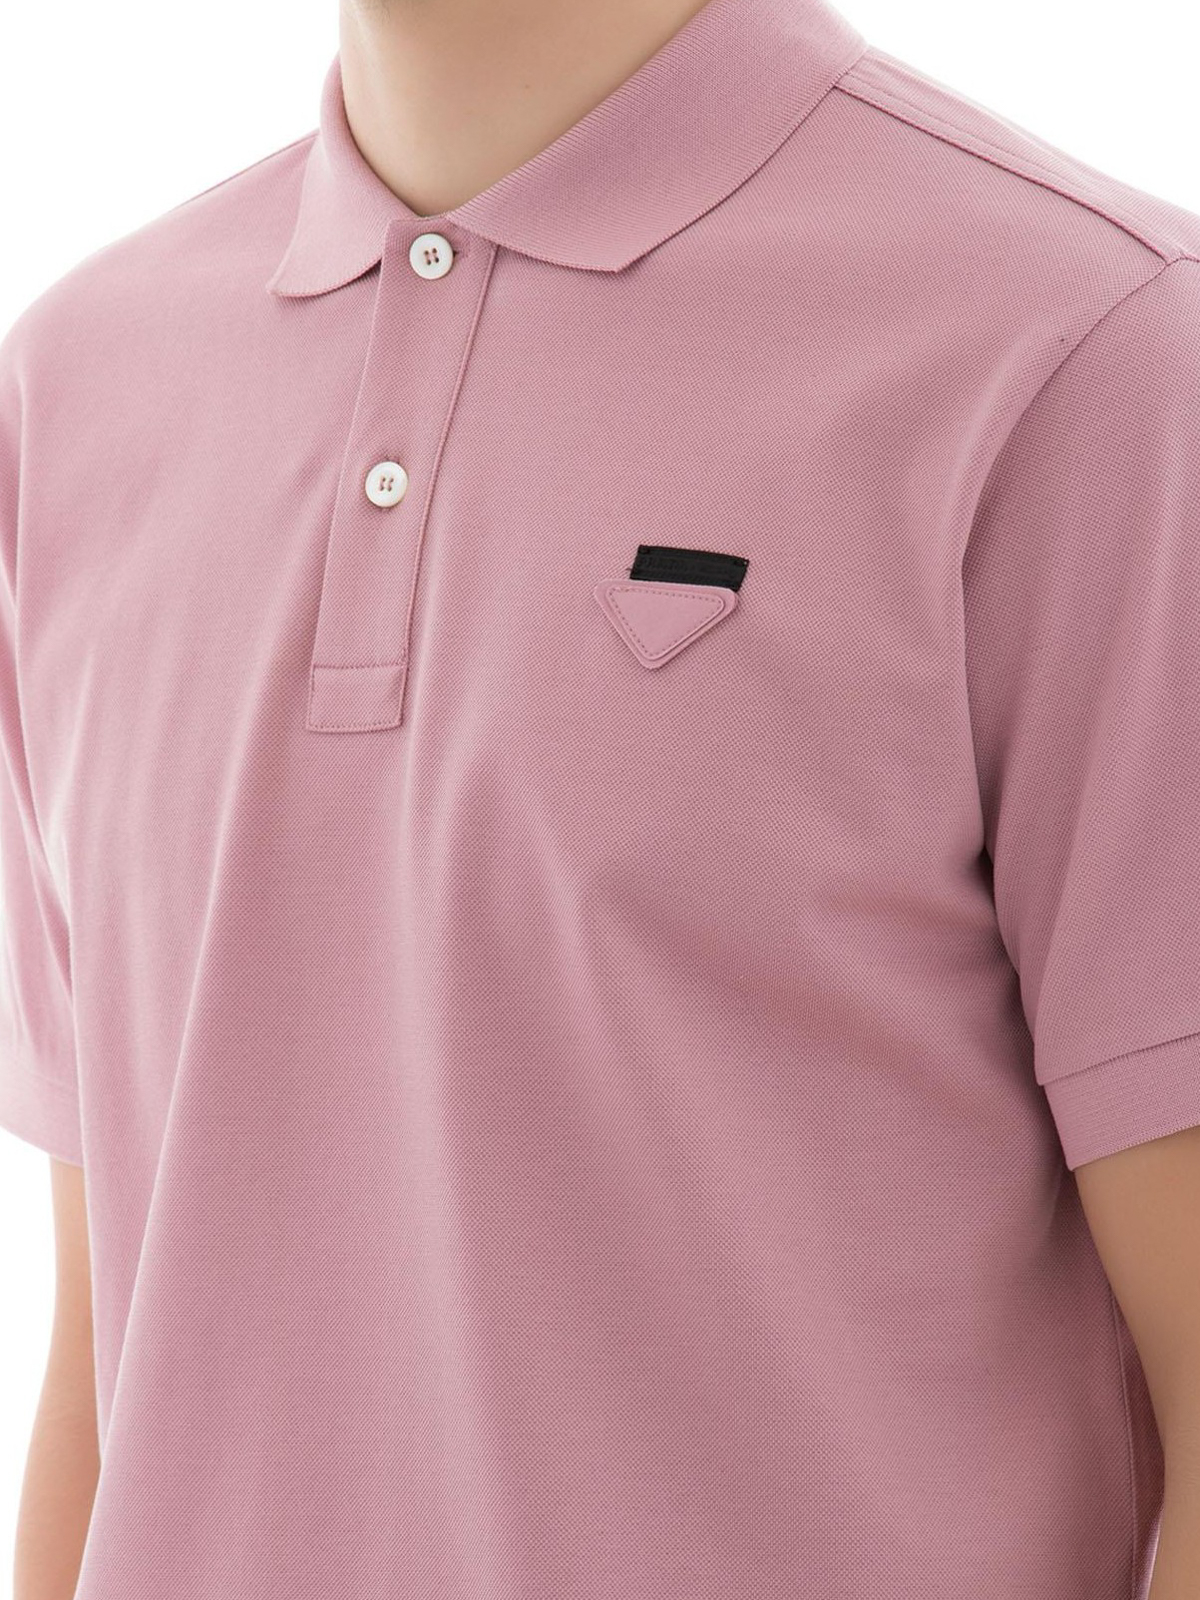 ポロシャツ Prada - ポロシャツ - ピンク - UJN444S181XGSF0638